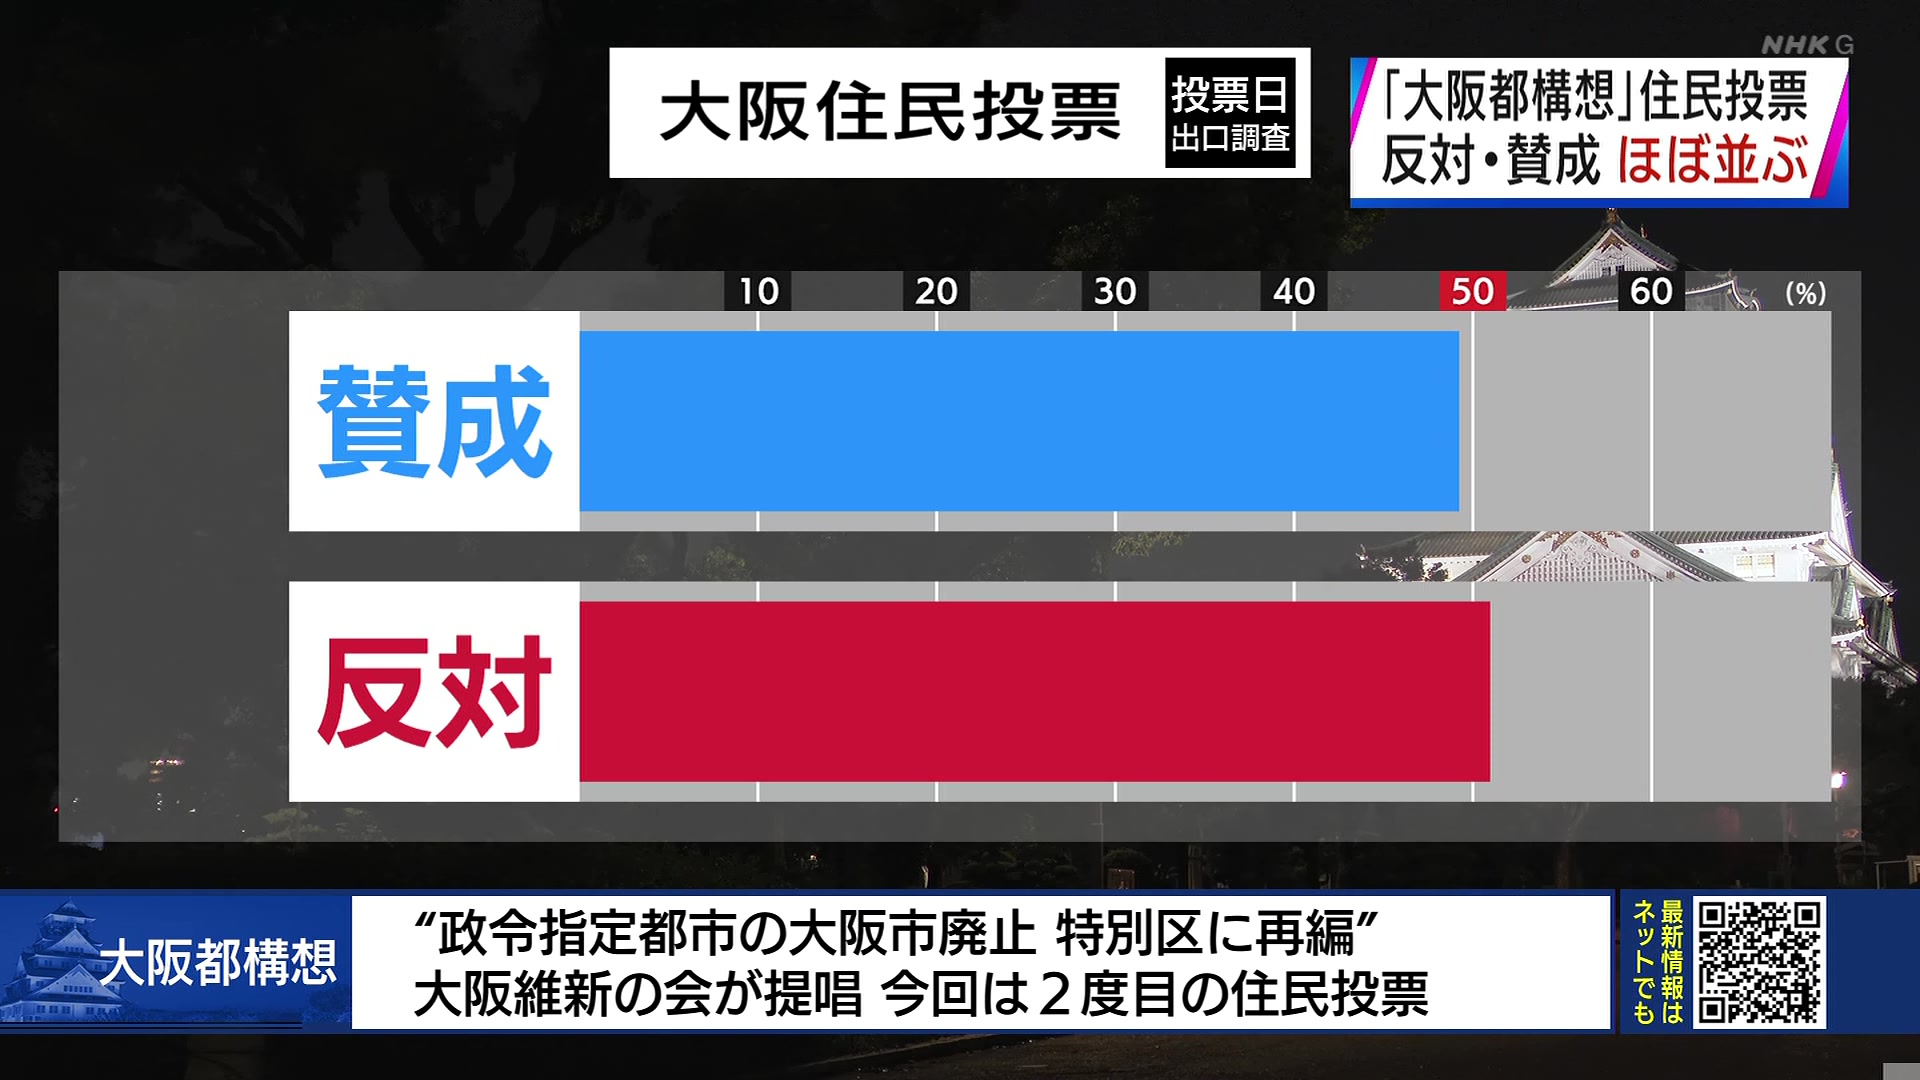 大阪都構想住民投票　NHK出口調査、賛否拮抗【LIVE 開票速報】